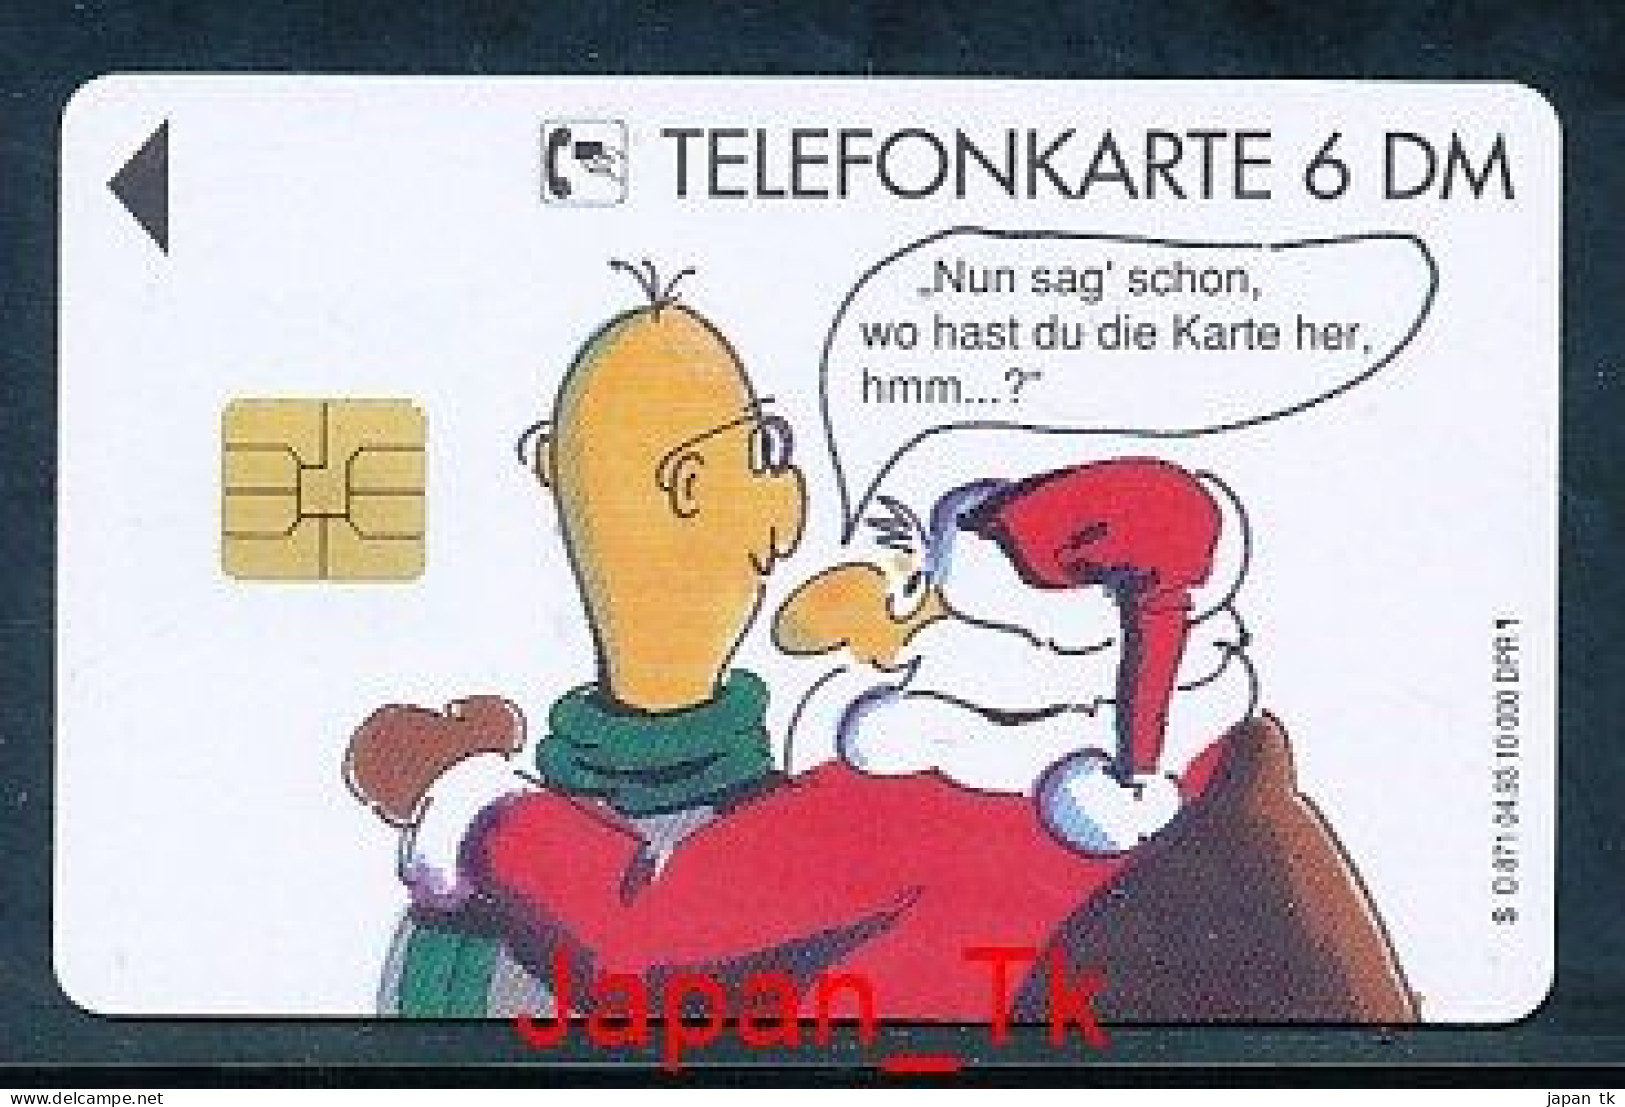 GERMANY O 871 93 Frohe Weihnachten - Aufl  10 000 - Siehe Scan - O-Series: Kundenserie Vom Sammlerservice Ausgeschlossen